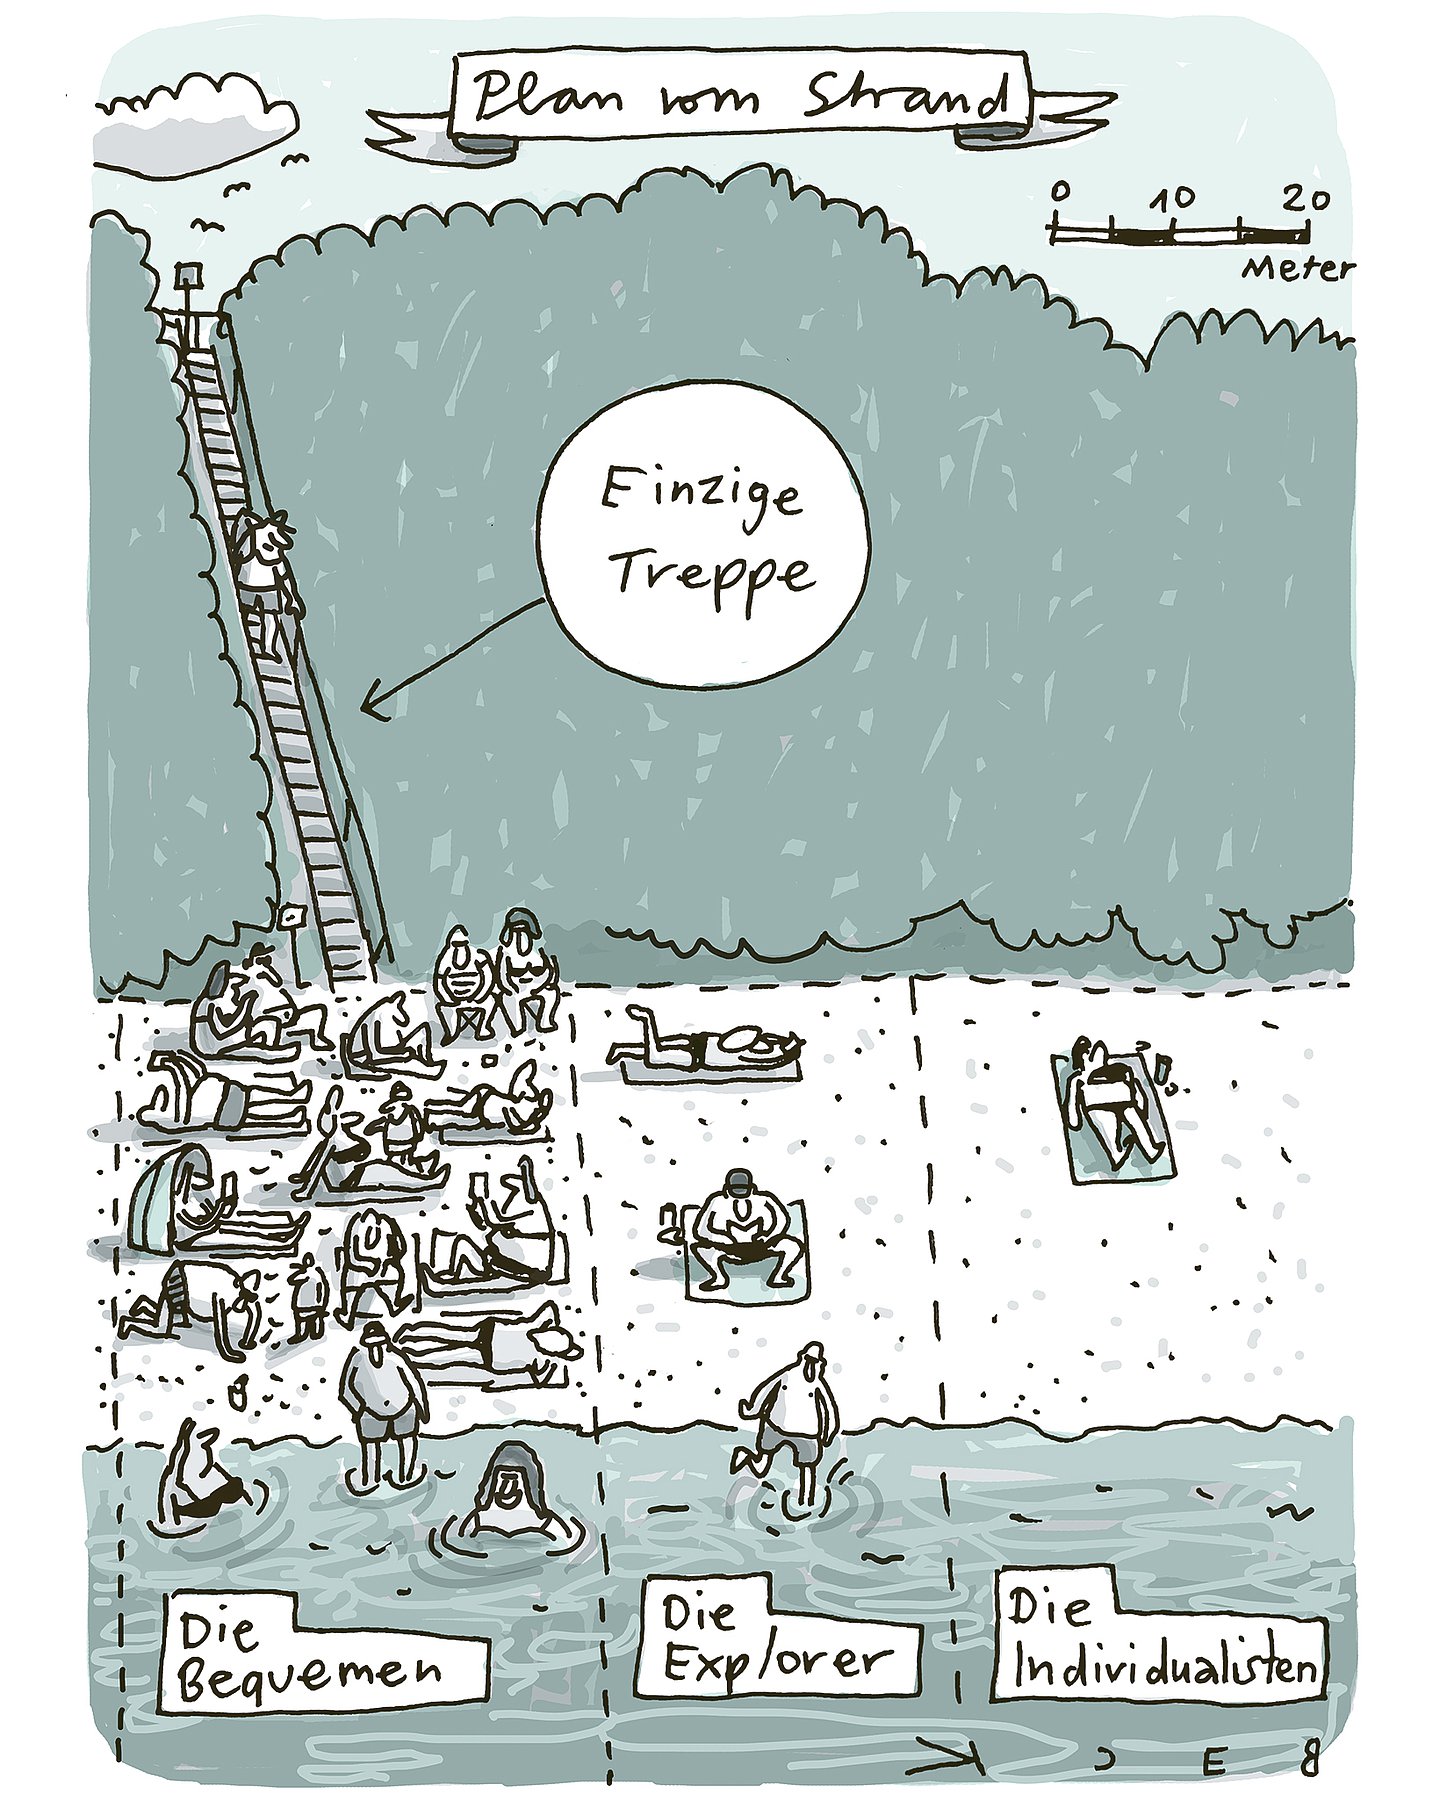 Foto: Cartoon des Künstlers Beck mit Strandszene "Plan vom Strand": Aufteilung in: "Die Bequemen - Die Explorer – Die Individualisten". Die einzige Treppe runter zum Strand führt fast alle zur Abteilung "Die Bequemen".